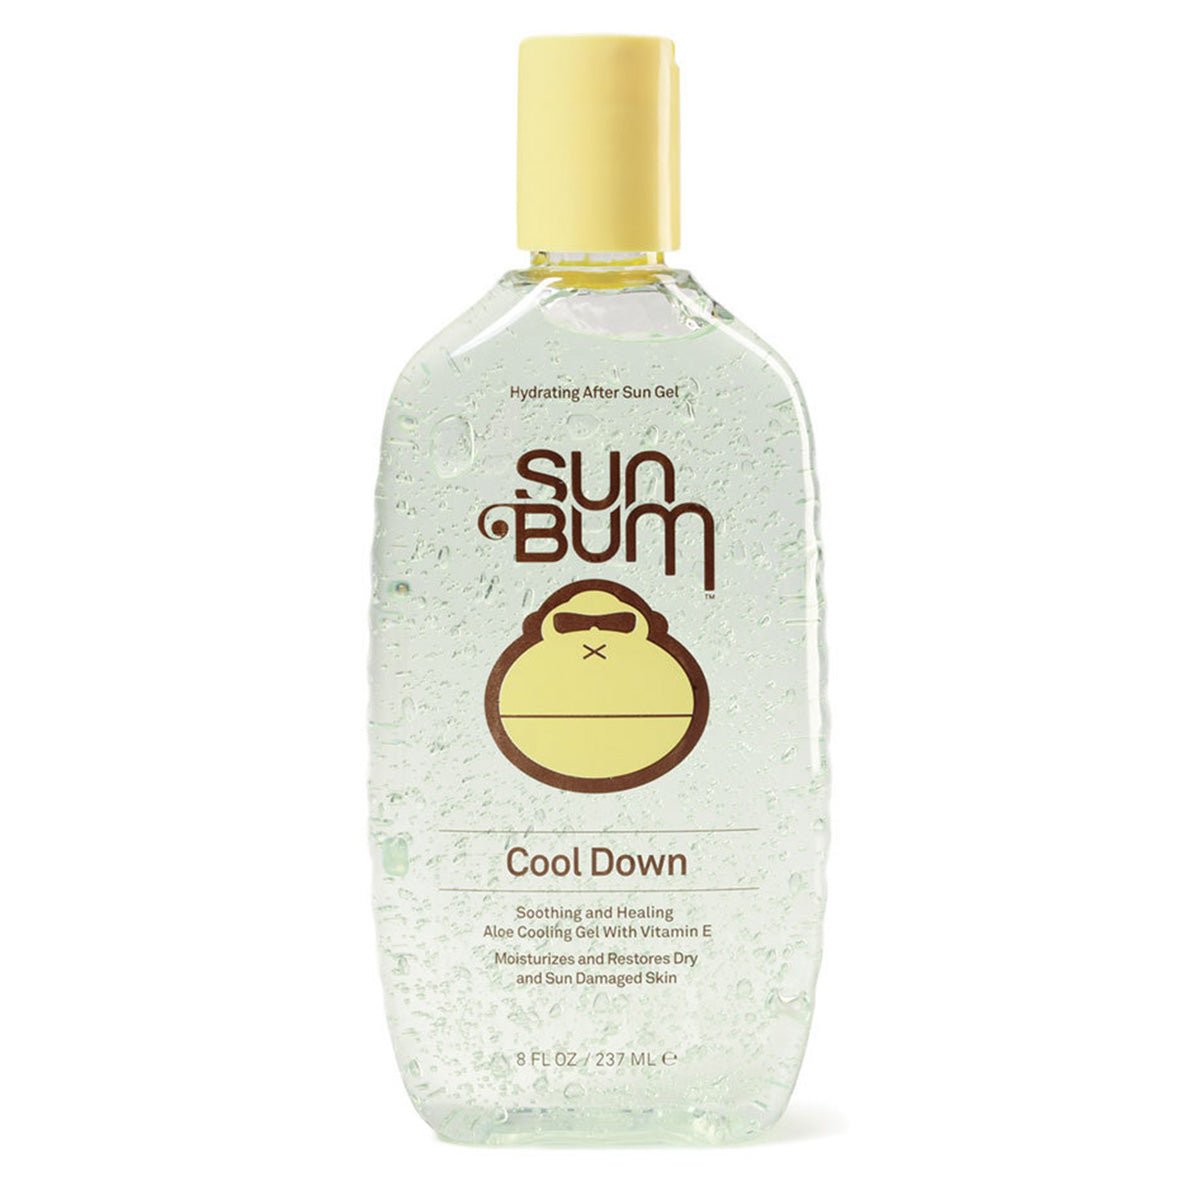 Sun Bum Cool Down Hydrating After Sun Gel - Destination PSP